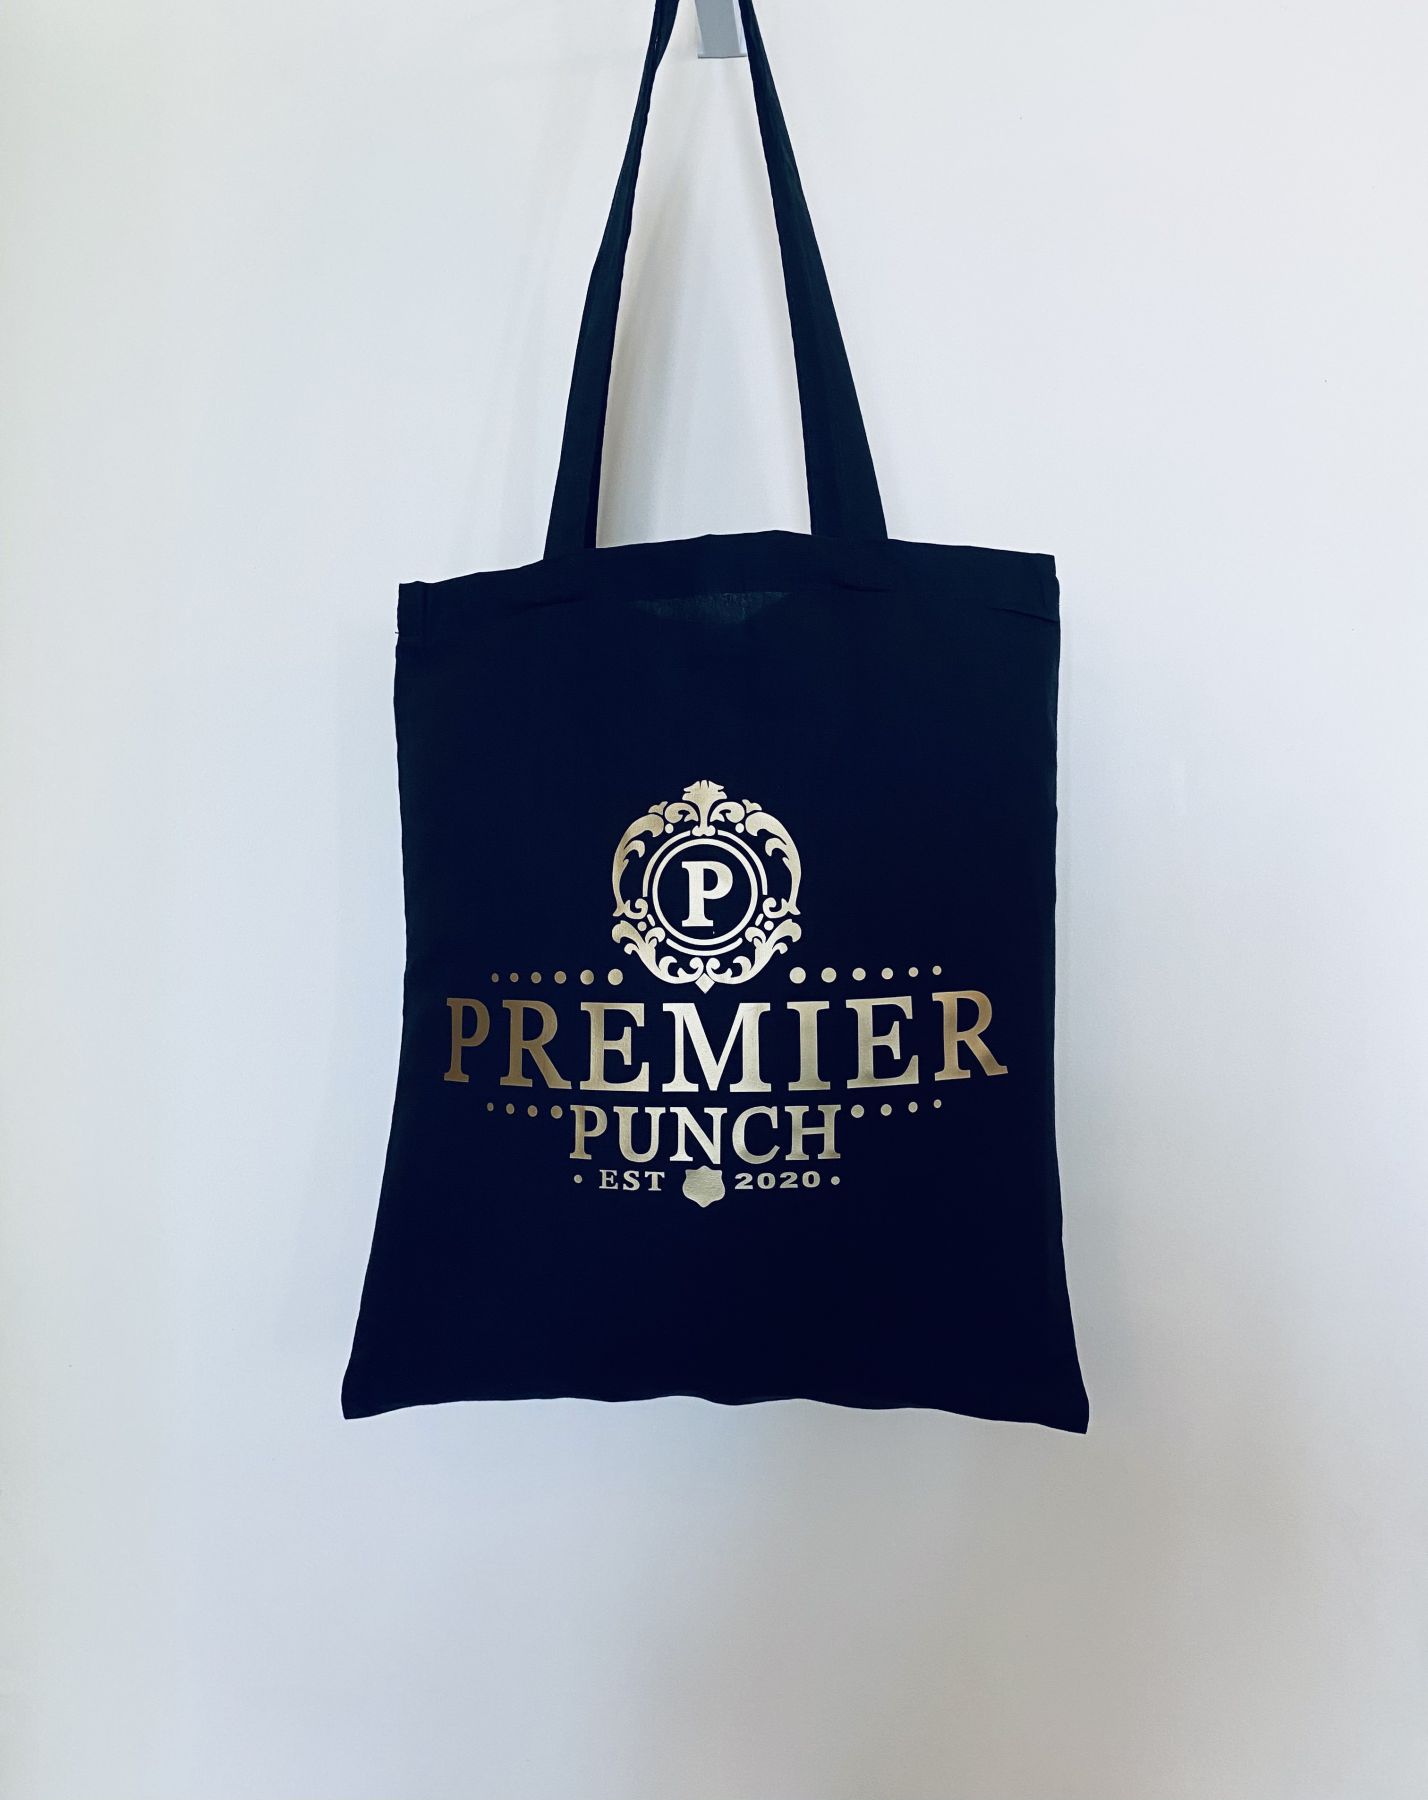 Premier Punch Branded Tote Bag